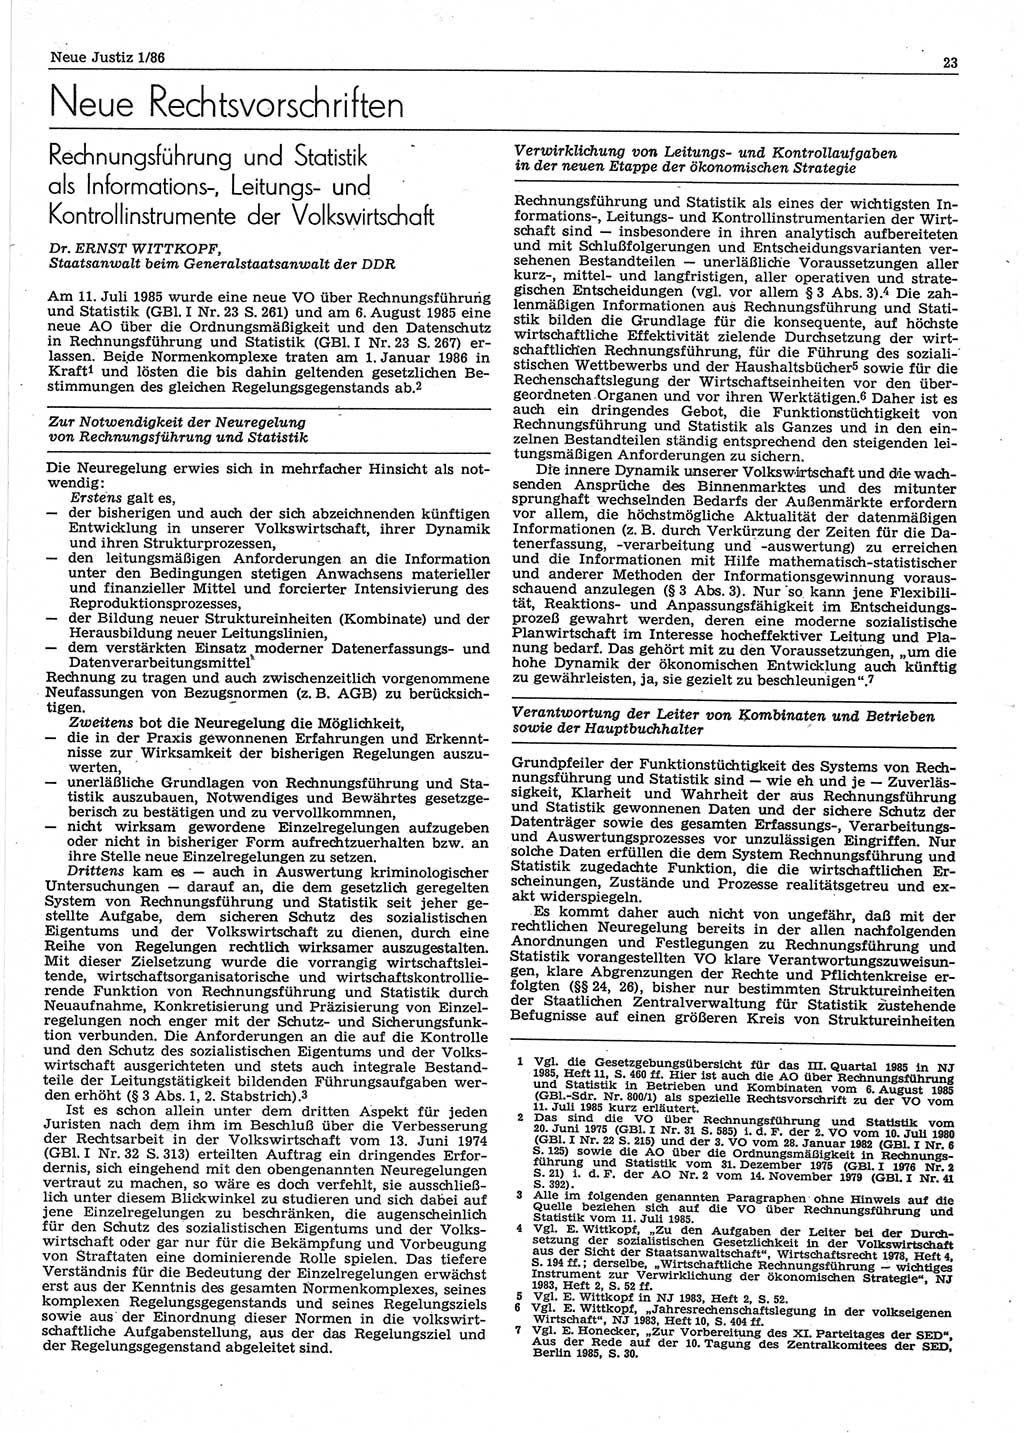 Neue Justiz (NJ), Zeitschrift für sozialistisches Recht und Gesetzlichkeit [Deutsche Demokratische Republik (DDR)], 40. Jahrgang 1986, Seite 23 (NJ DDR 1986, S. 23)